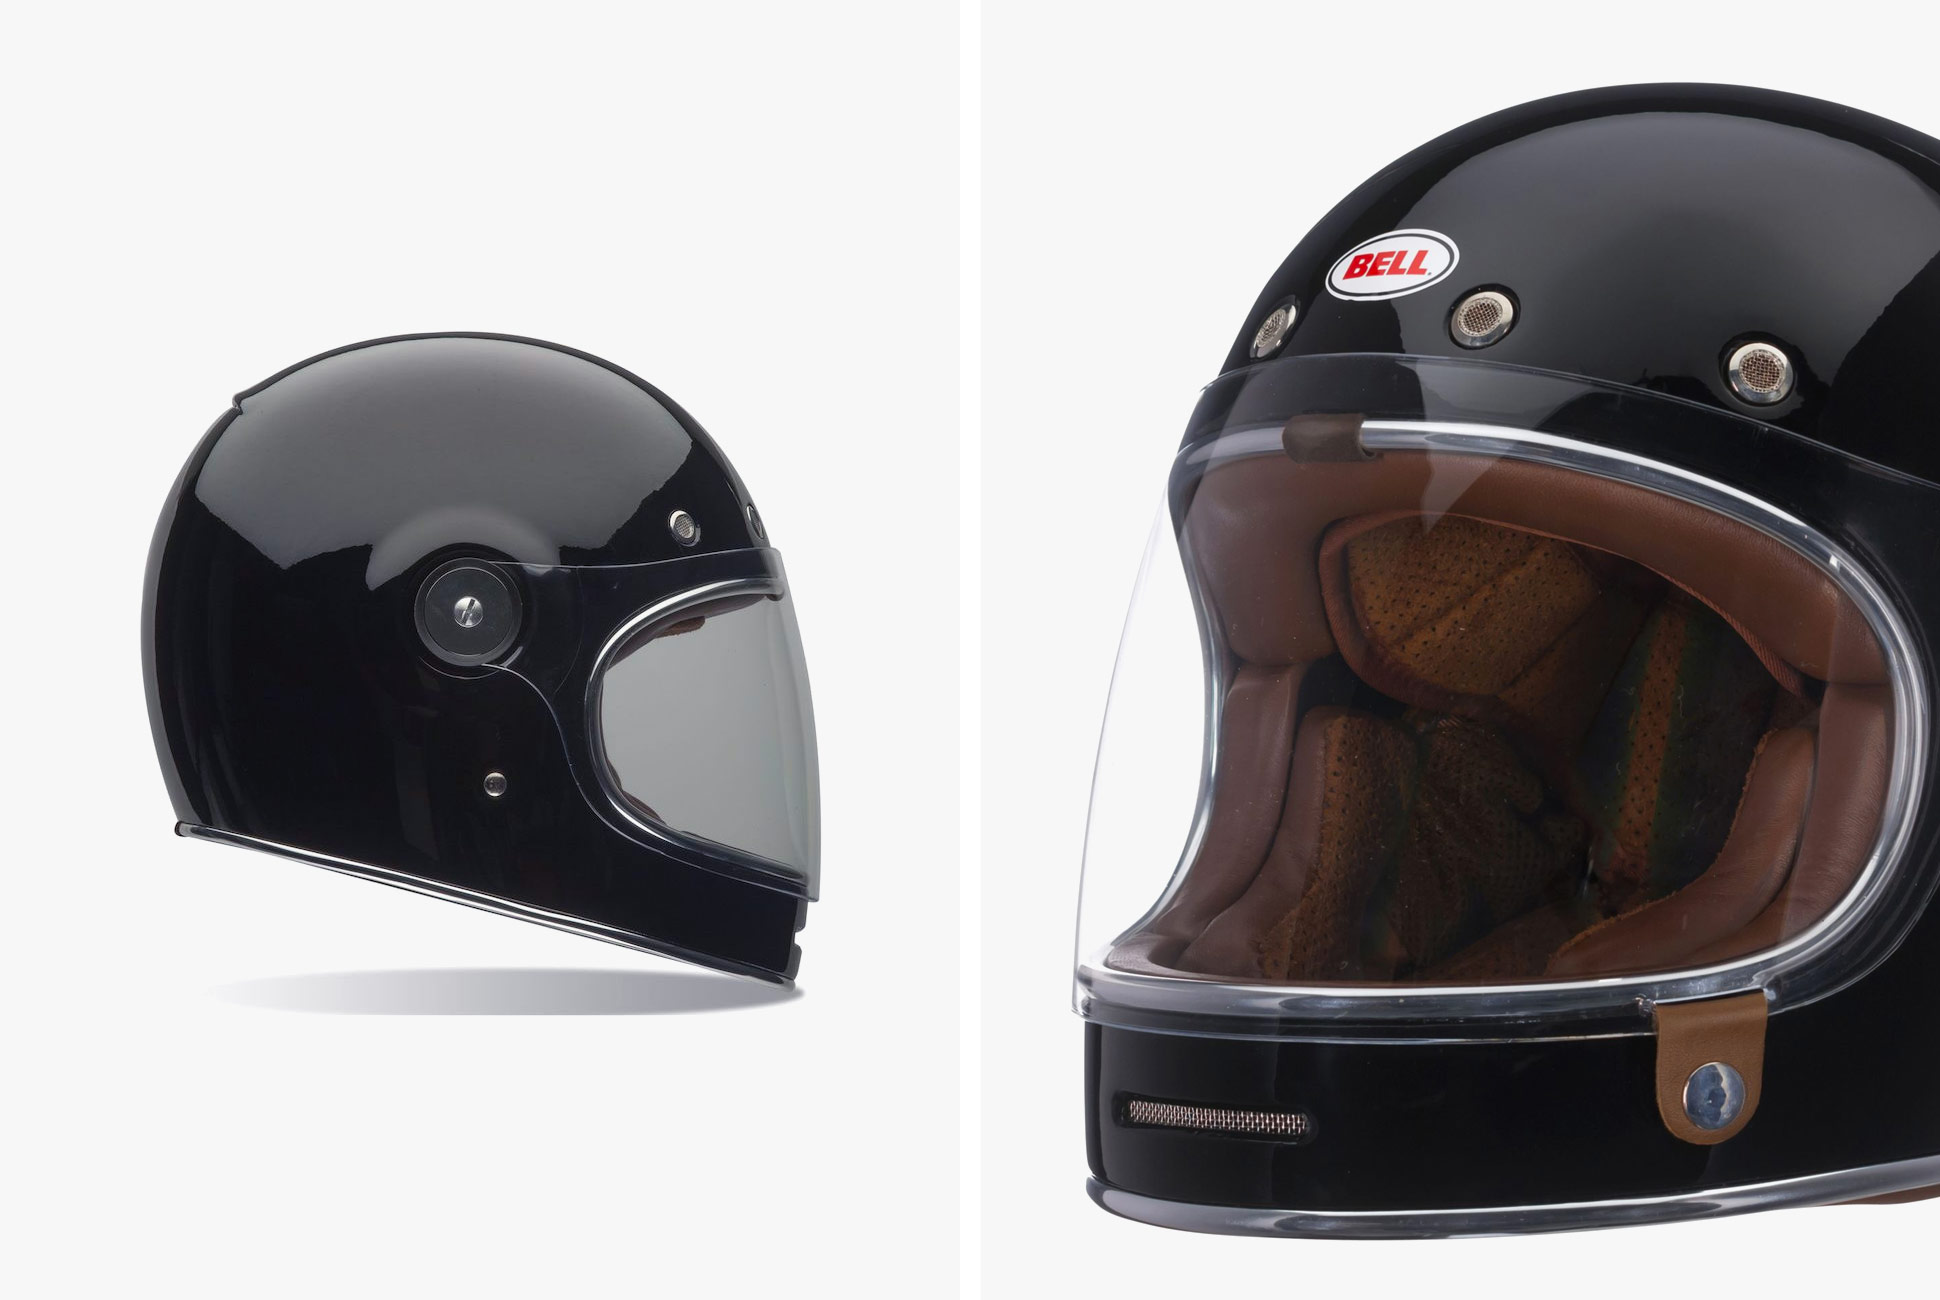 Save $100 on Bell's Best Looking Vintage Motorcycle Helmet • Gear Patrol